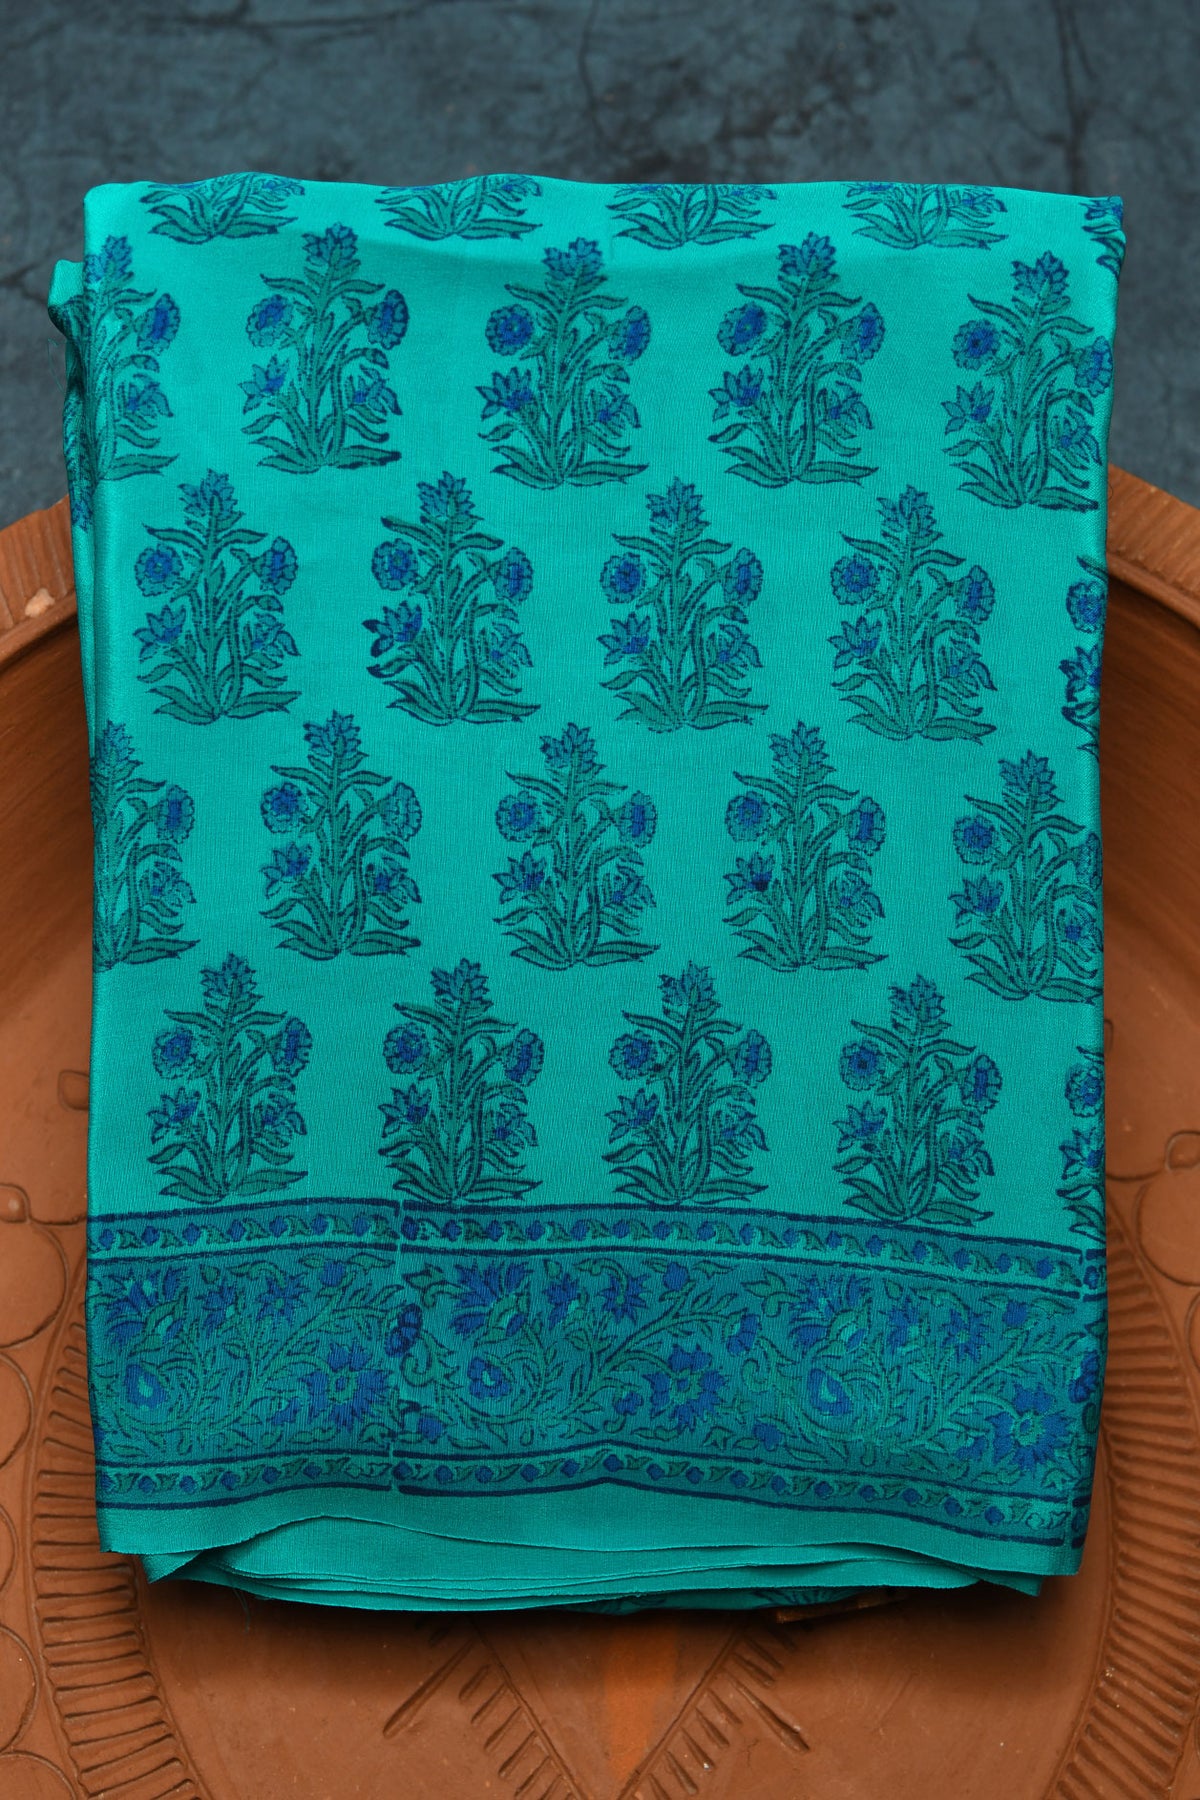 Floral Digital Printed Teal Green Crepe Silk Saree